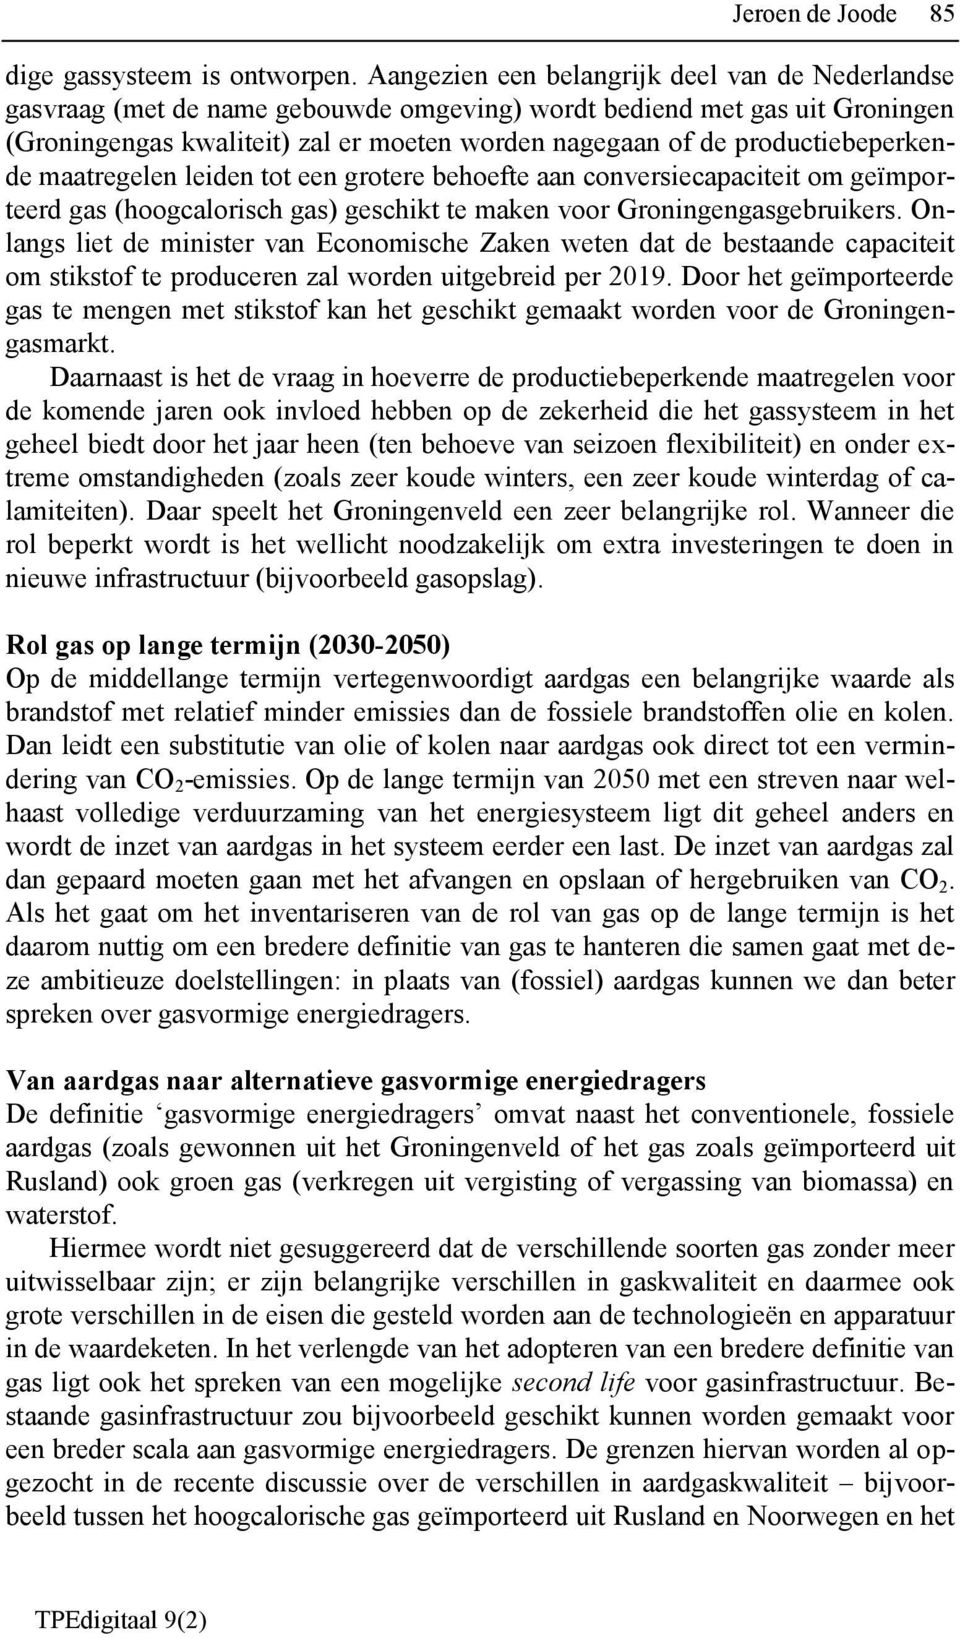 productiebeperkende maatregelen leiden tot een grotere behoefte aan conversiecapaciteit om geïmporteerd gas (hoogcalorisch gas) geschikt te maken voor Groningengasgebruikers.